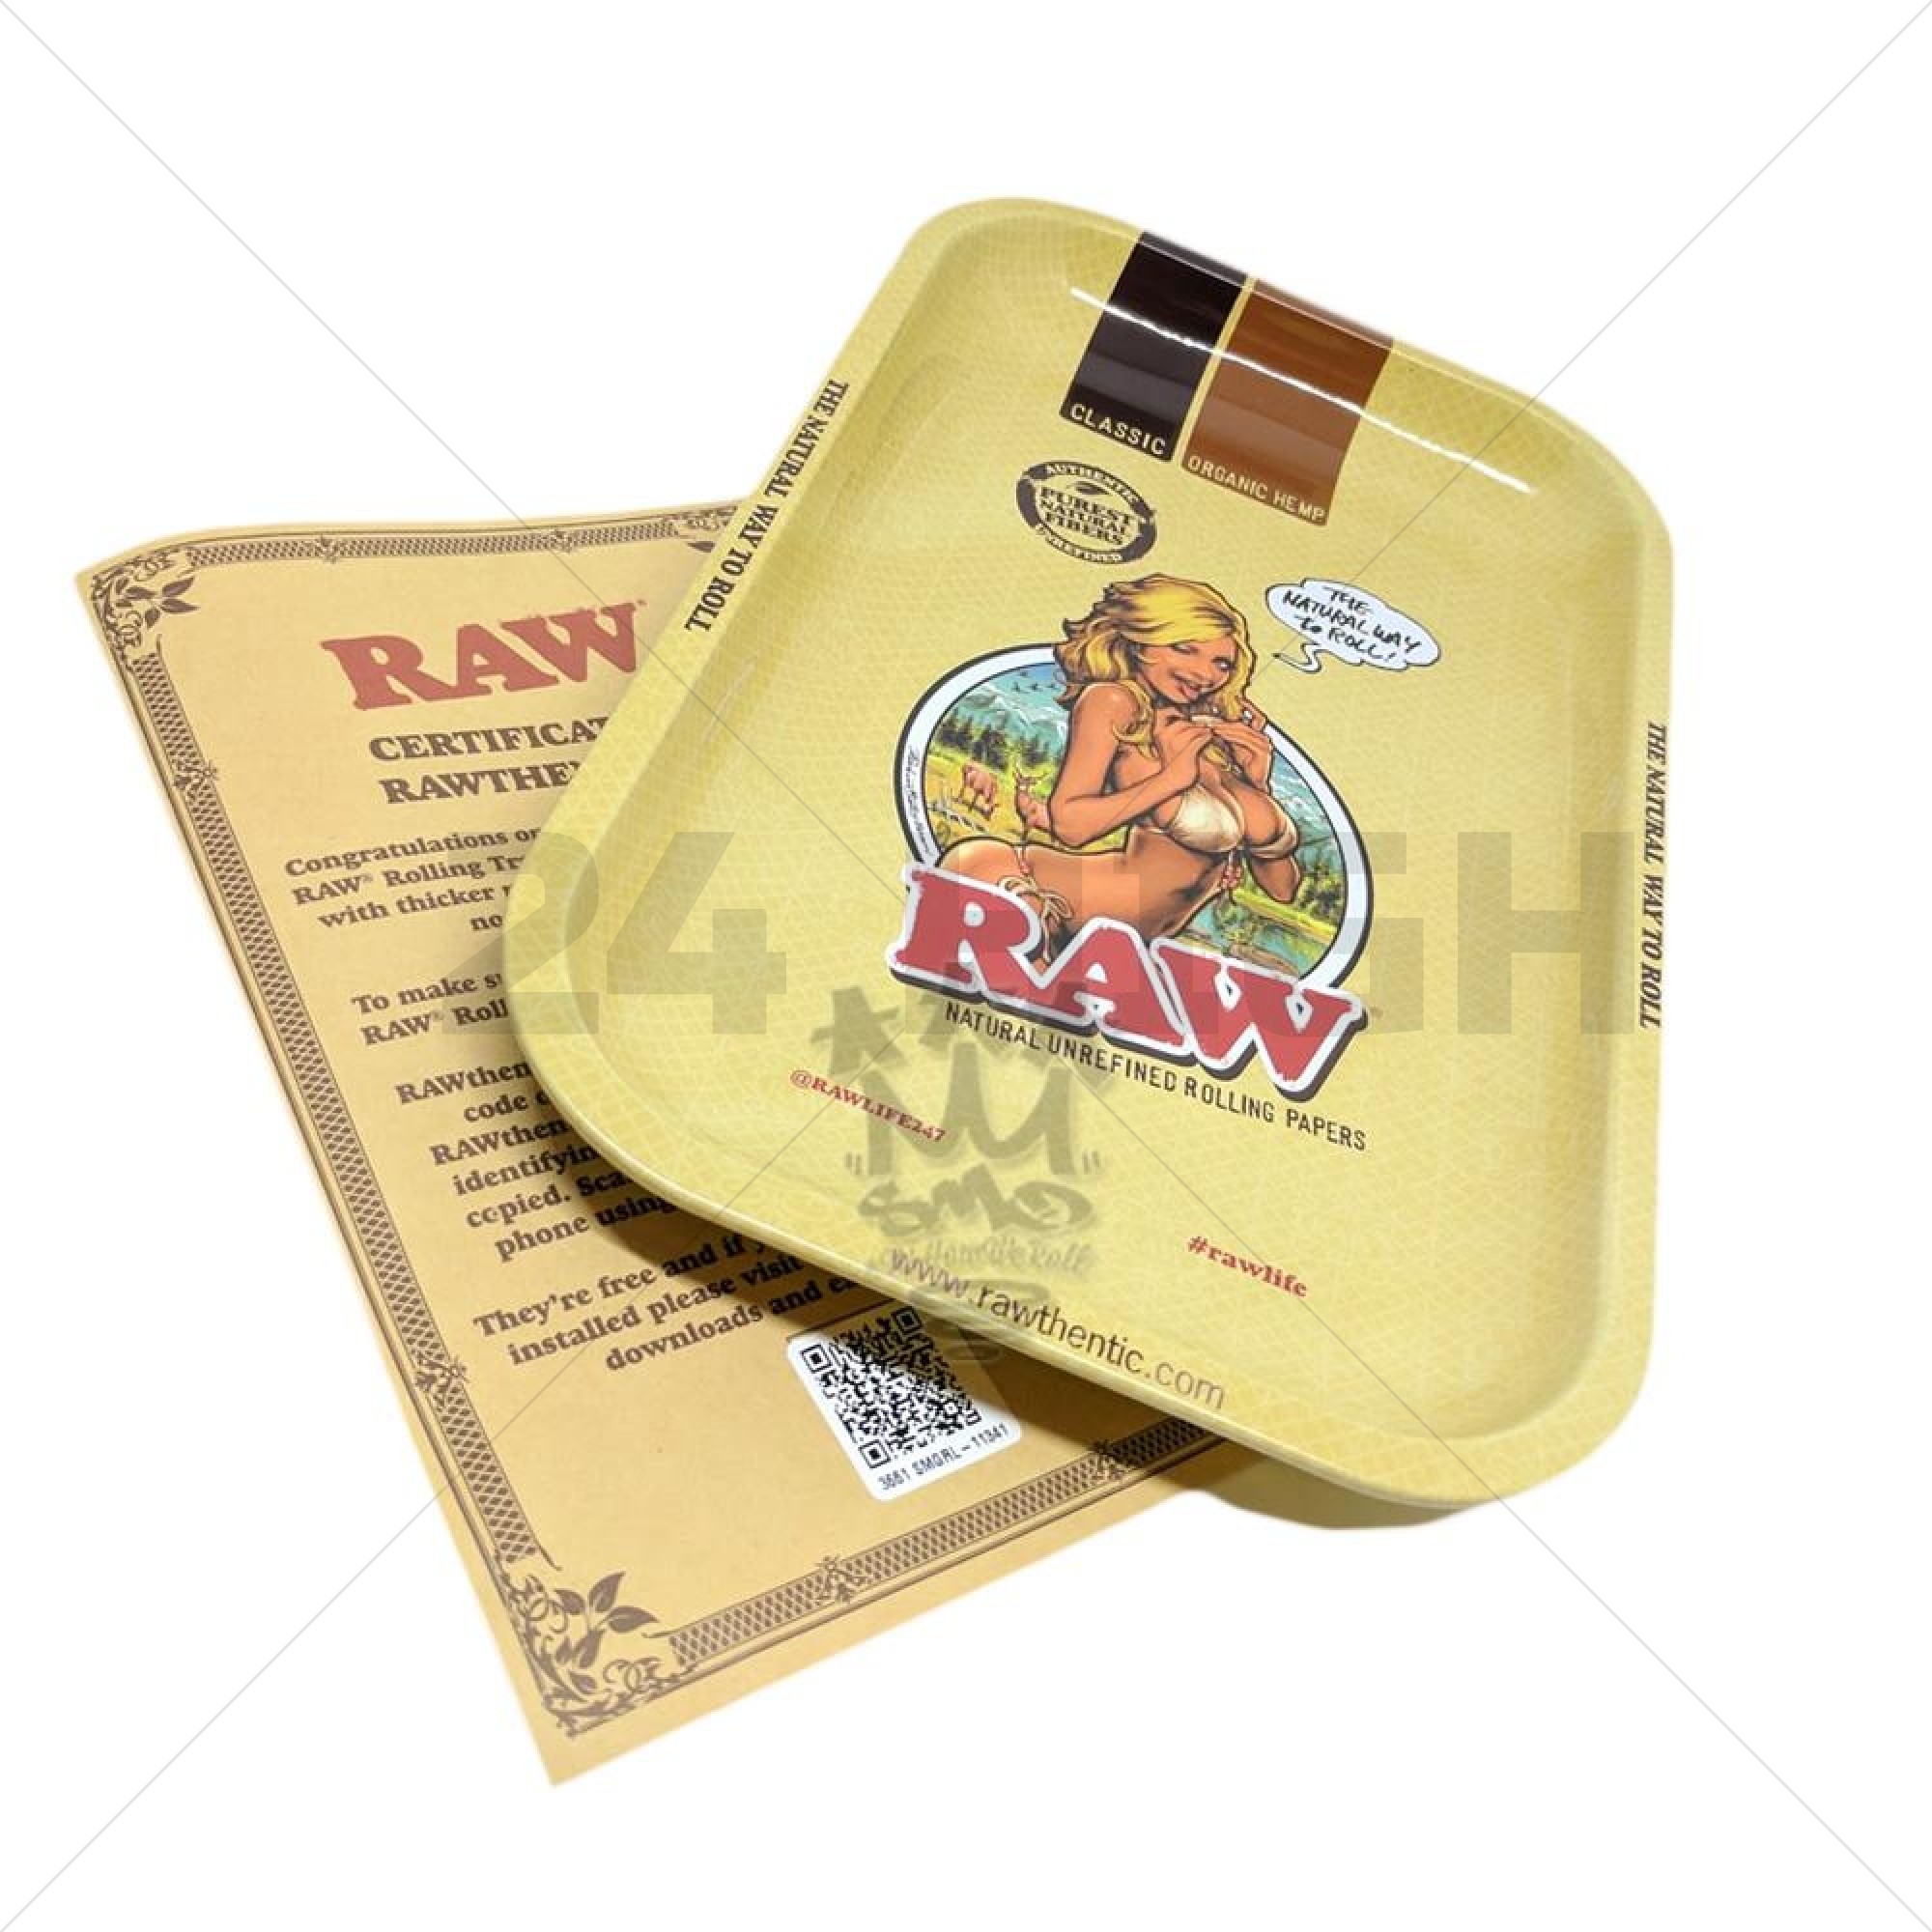 Raw Metal Rolling Tray - RAW Girl 